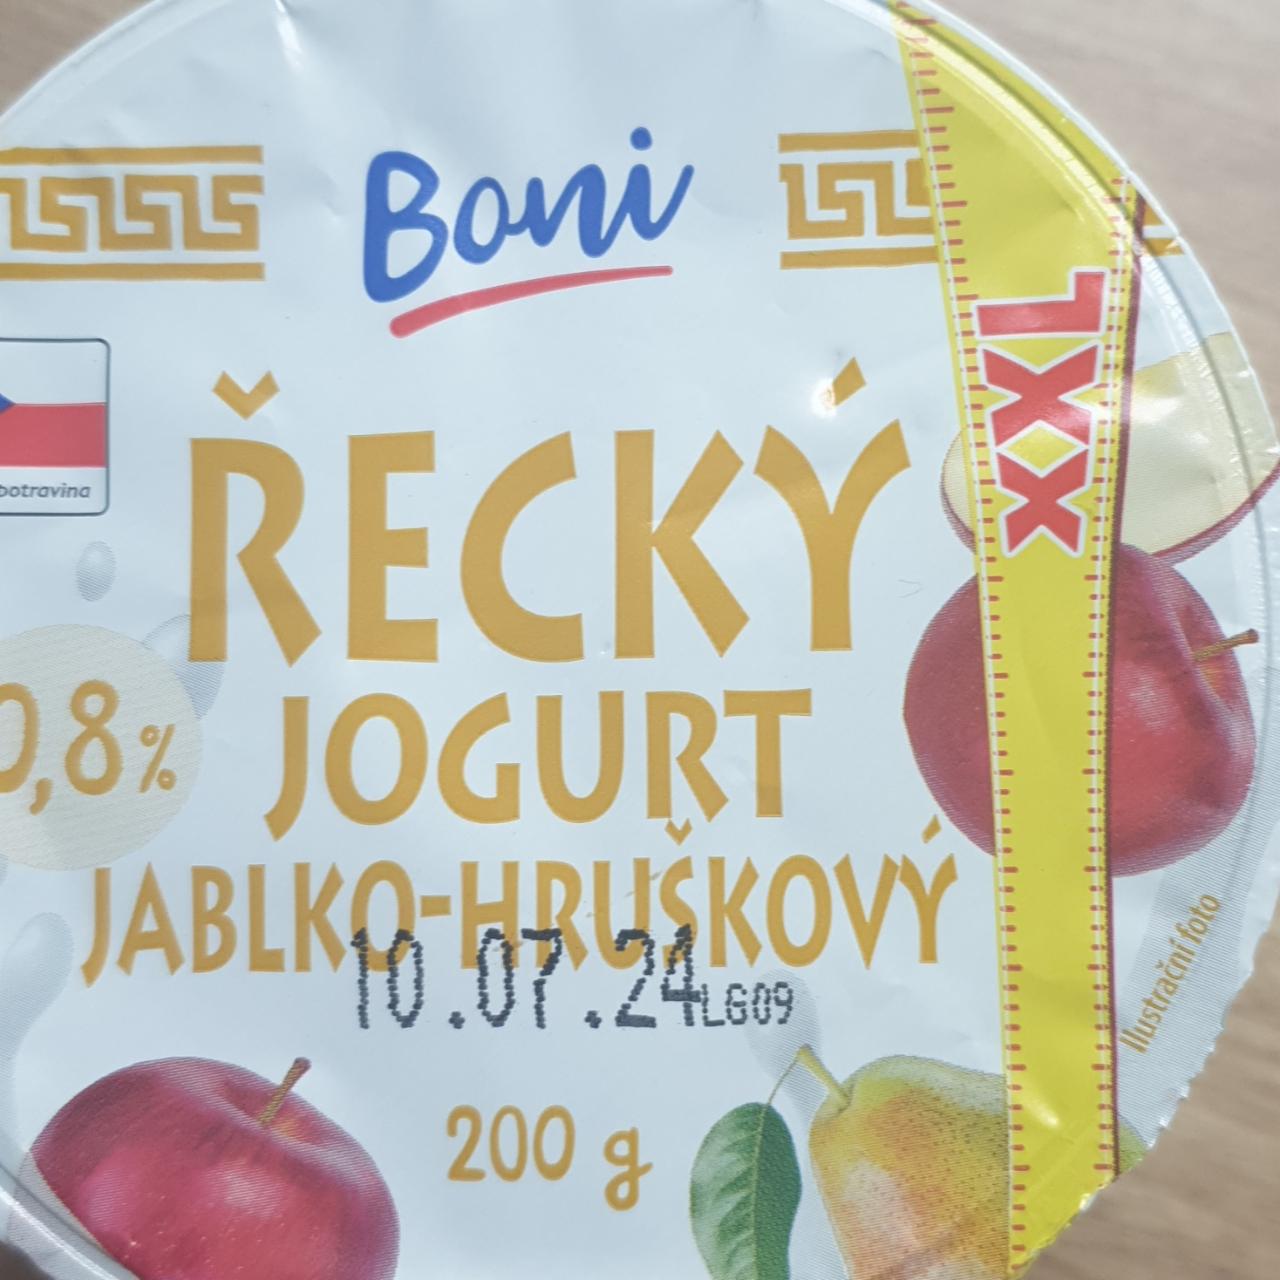 Fotografie - Řecký jogurt jablko-hruškový Boni